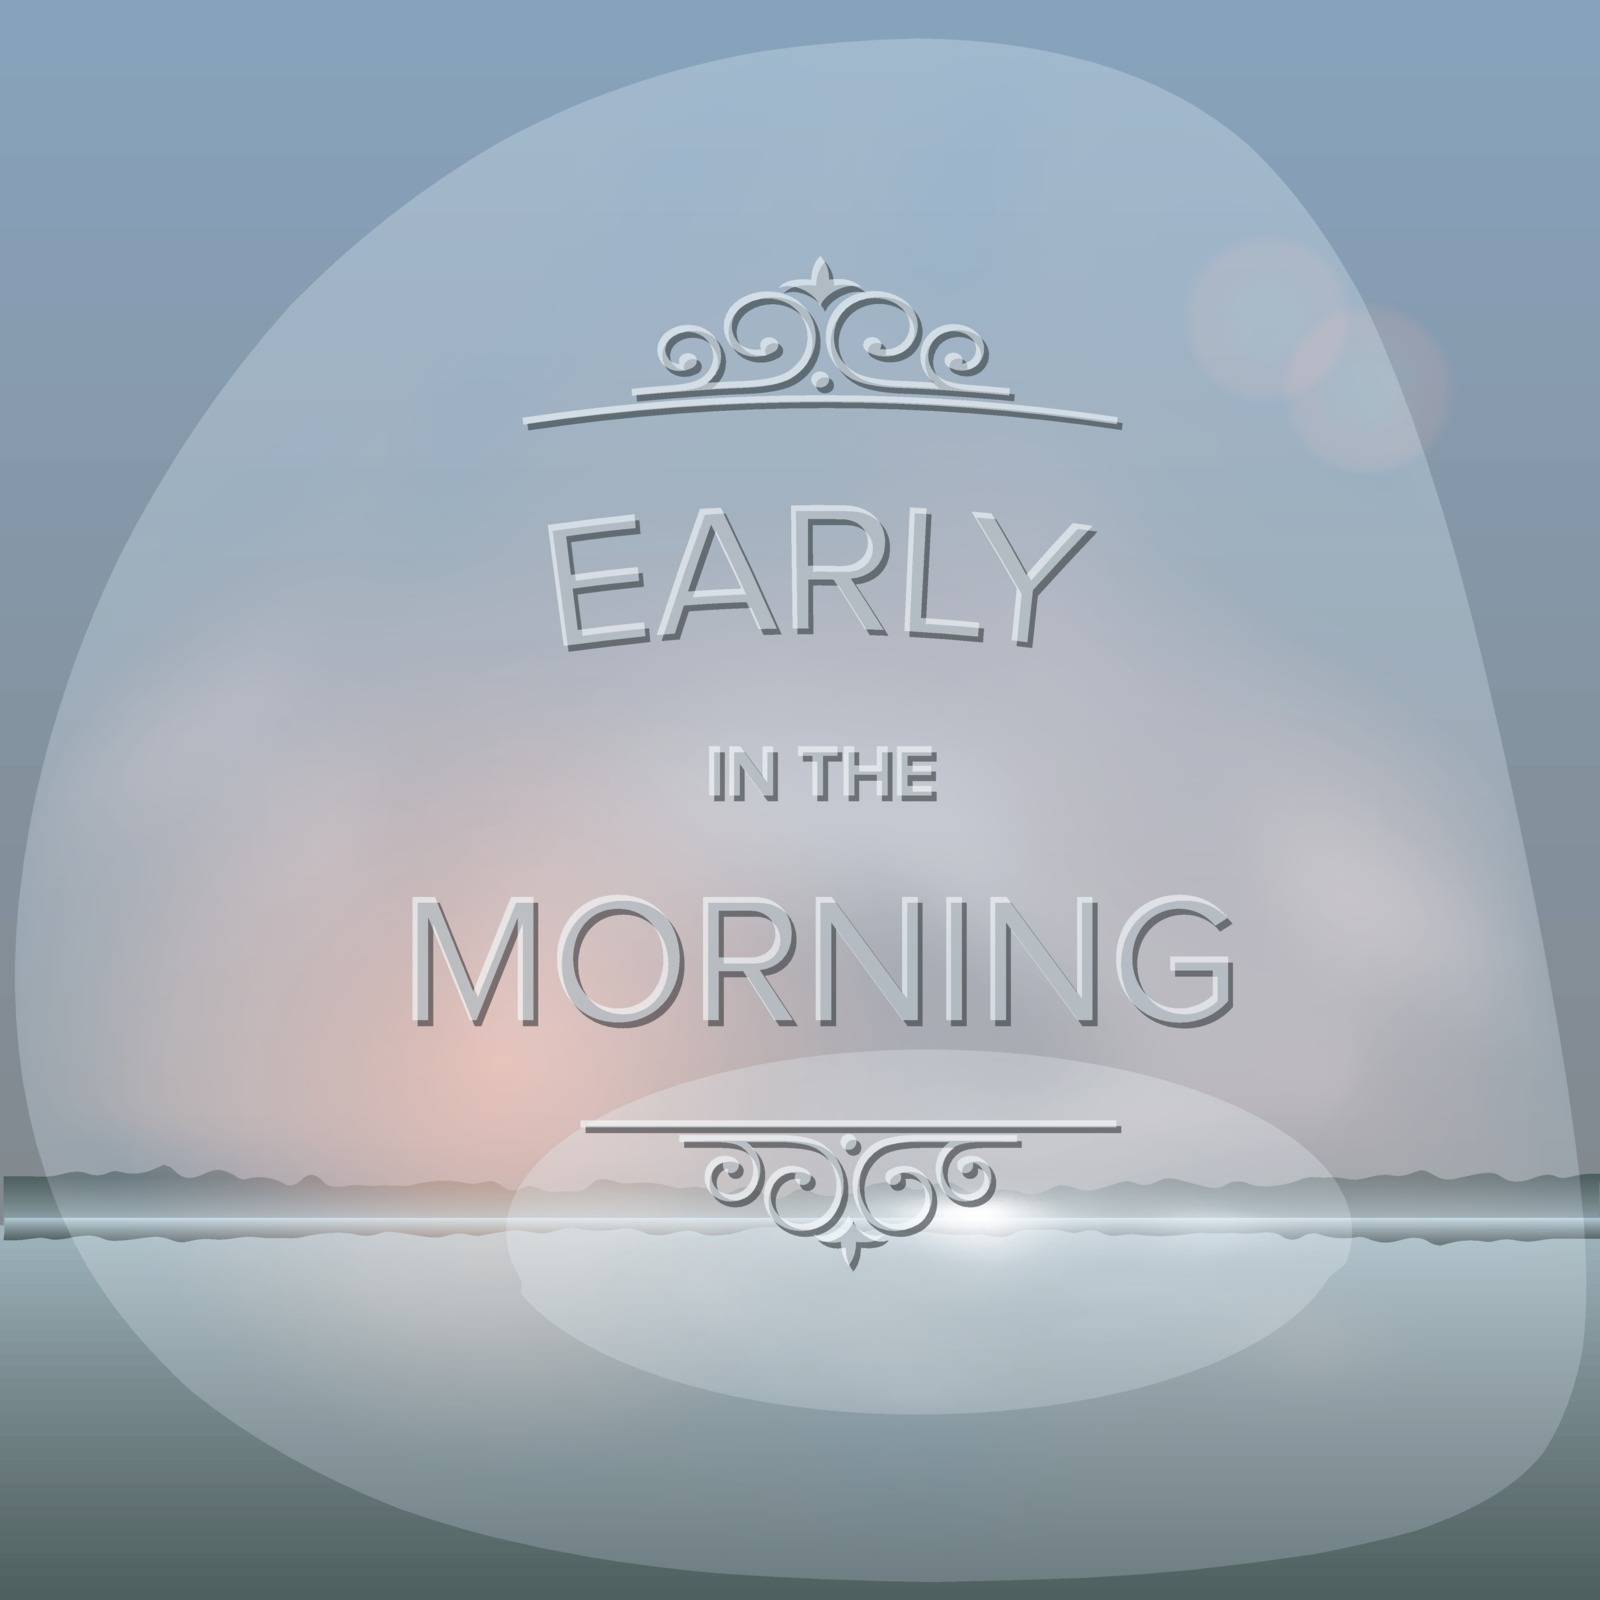 Misty morning background by ikopylov